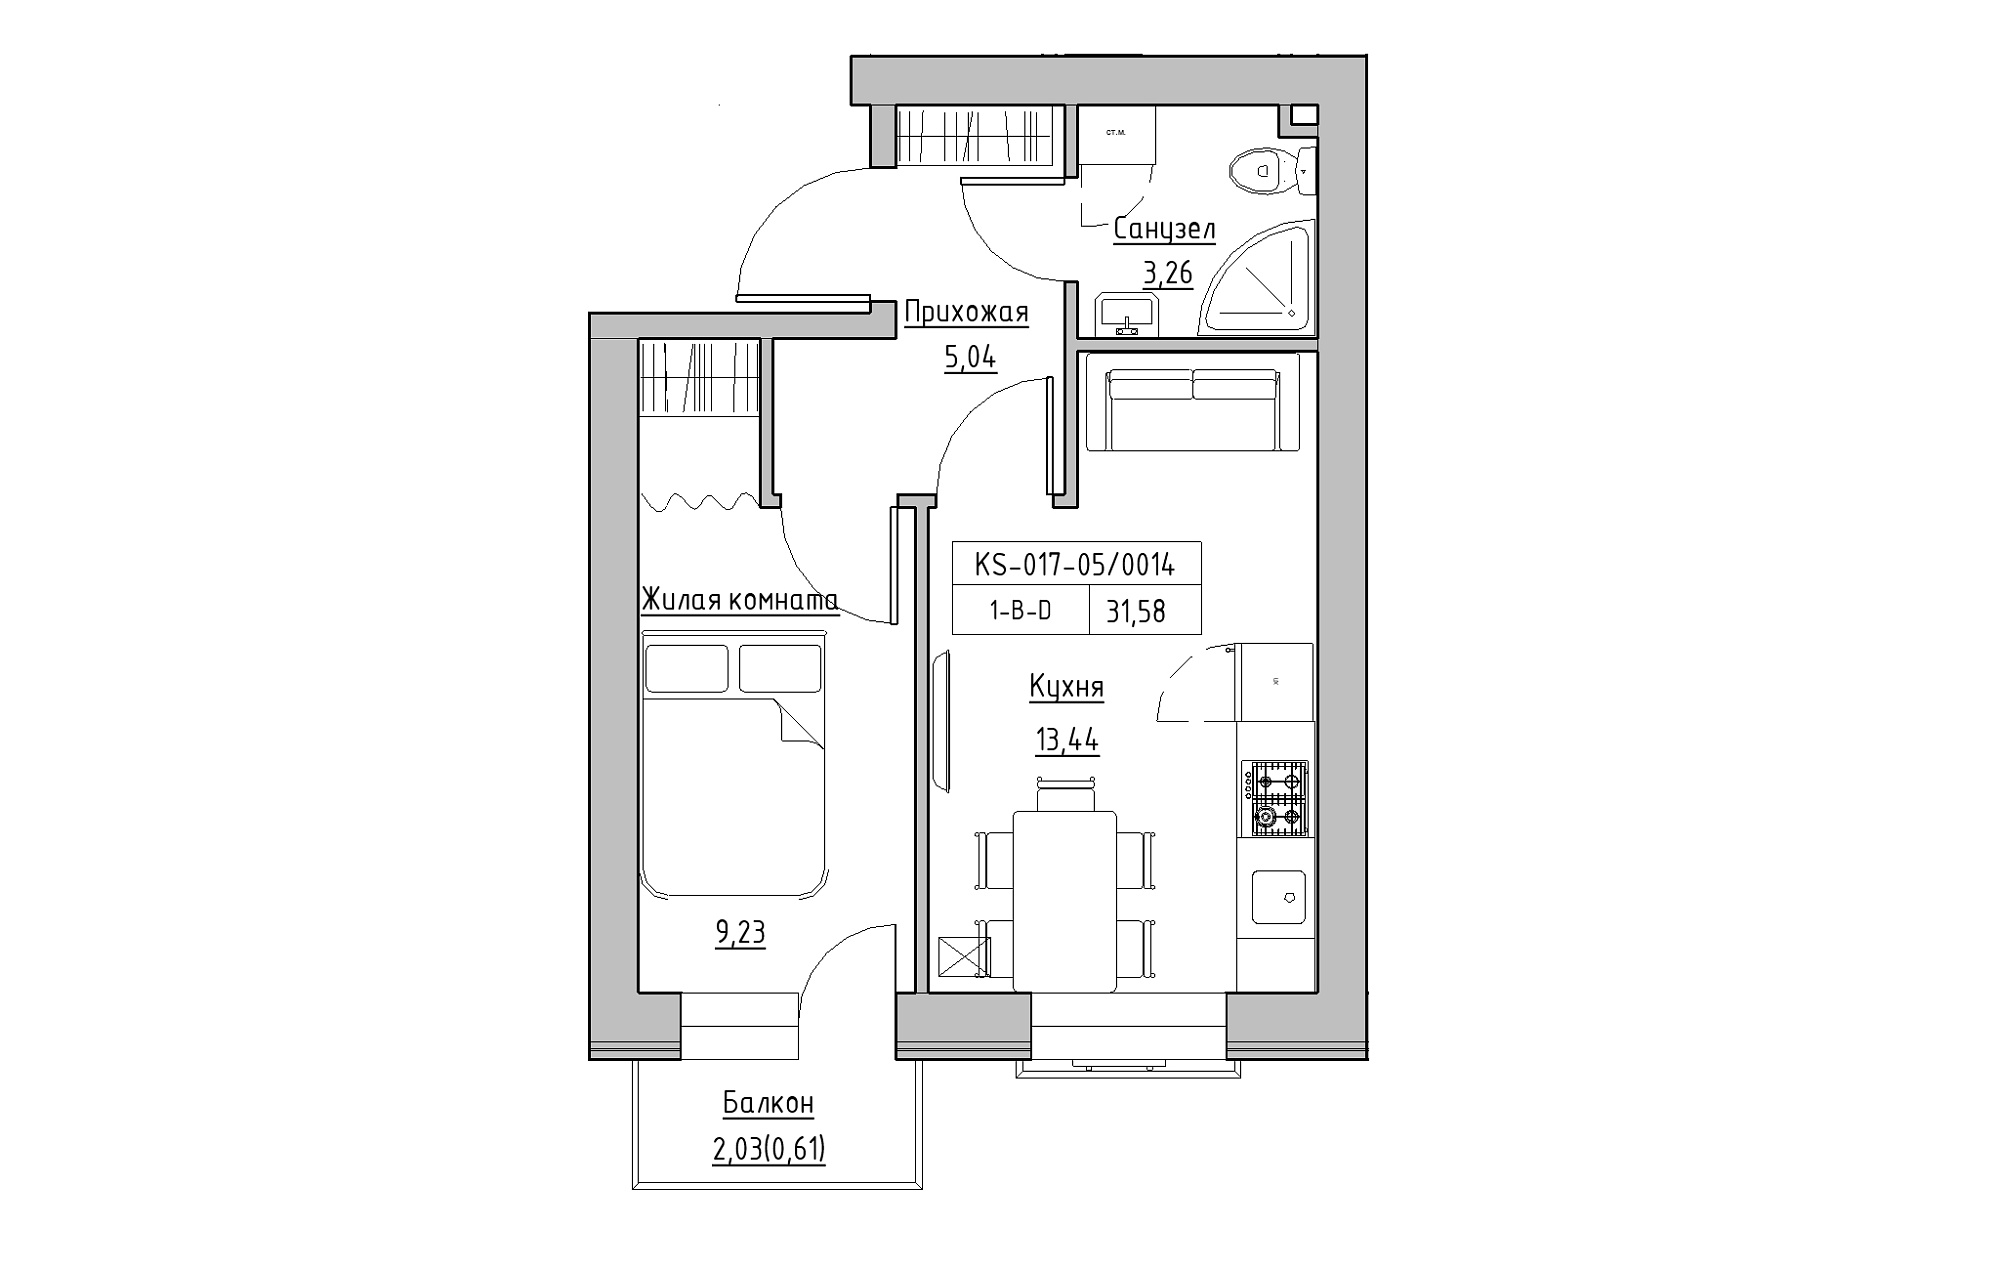 Планировка 1-к квартира площей 31.58м2, KS-017-05/0014.